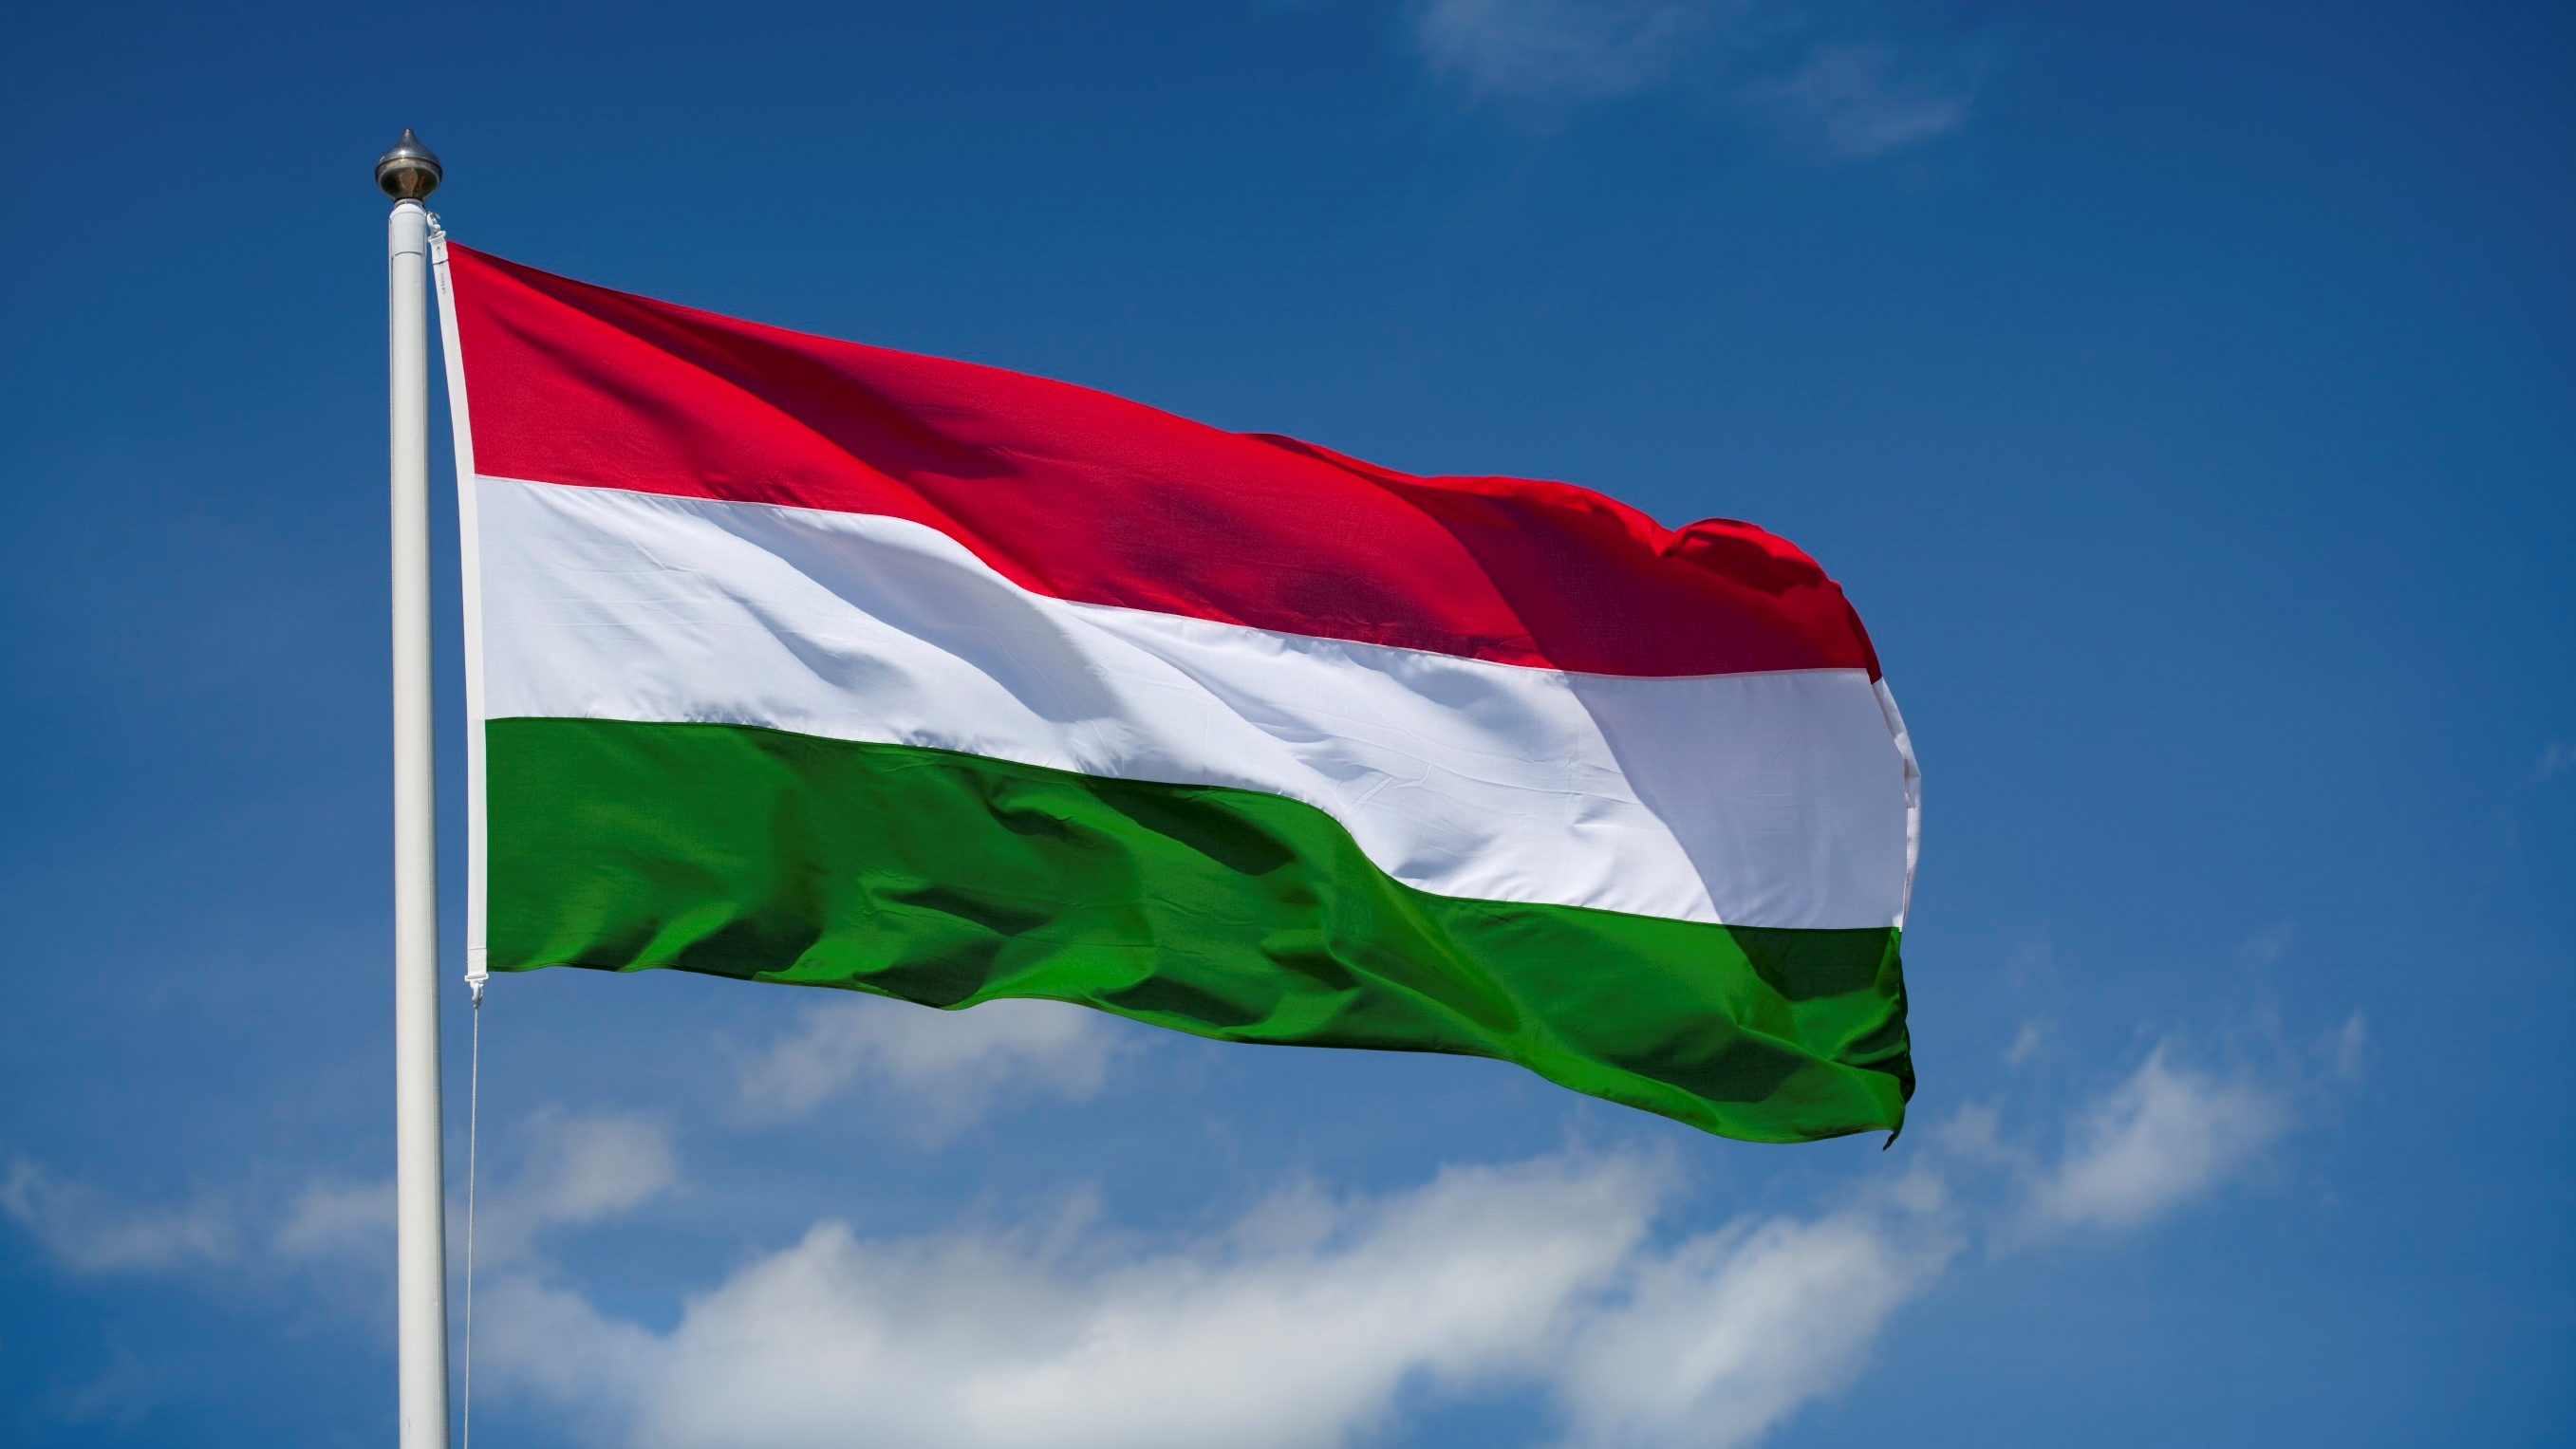 Macaristan: Yaklaşan Ulusal Bayram Nedeniyle Geceleri Araç Kullanma Kısıtlamalarının Kaldırılması Hakkında